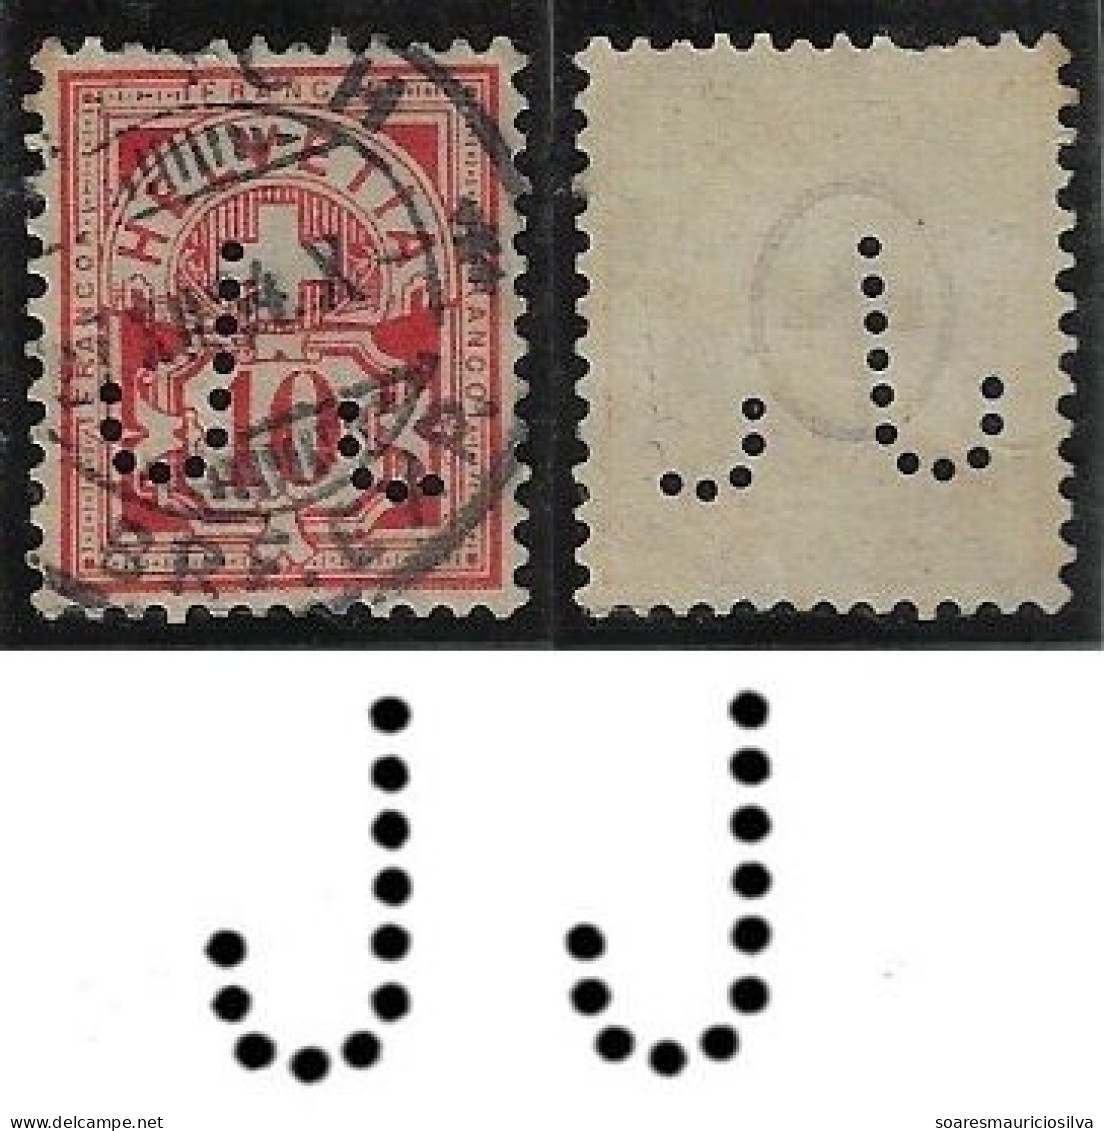 Switzerland 1901/1922 Stamp With Perfin JJ By J. Jäggli Centralhof Zurich Lochung Perfore - Perfin